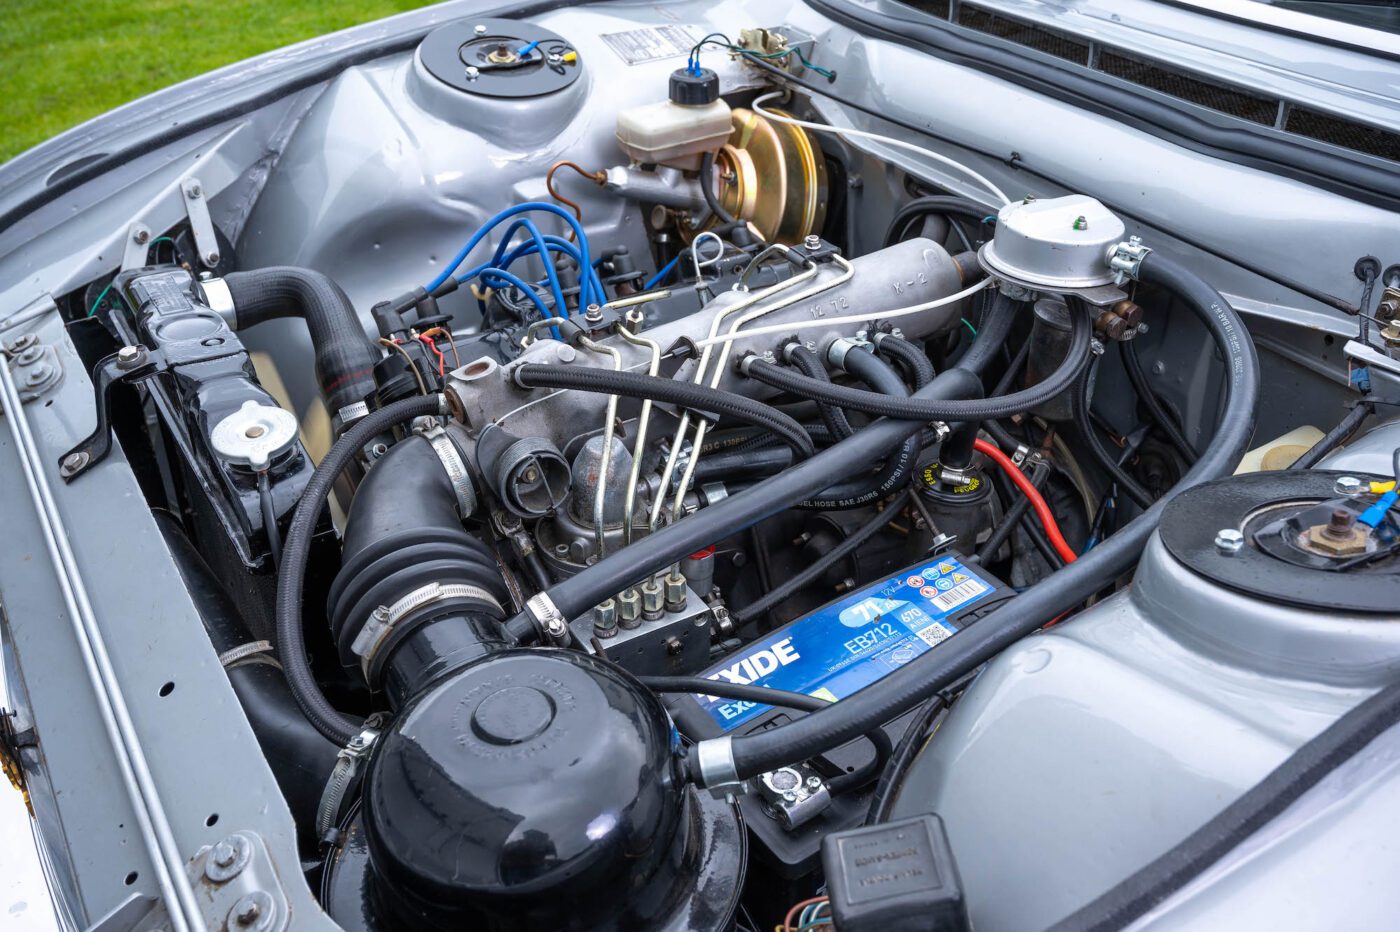 Peugeot 504 Cabriolet engine